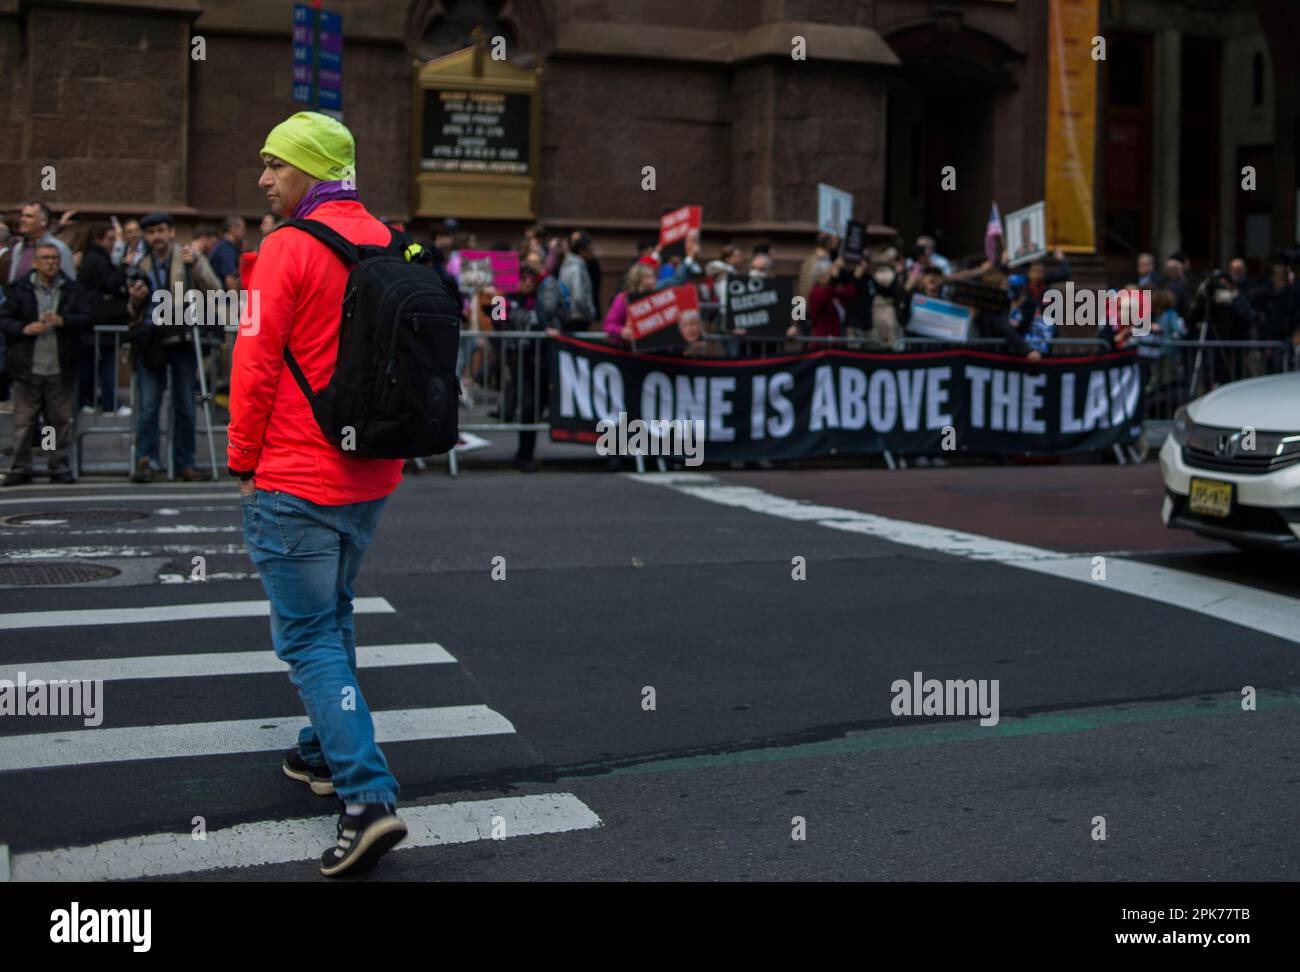 Anti-Trump-Demonstration auf der 5. Avenue, New York City. Während Fußgänger vorbeikommen, übertrumpft der Vormittag der Anklageerhebung. 04. April 2023 Stockfoto